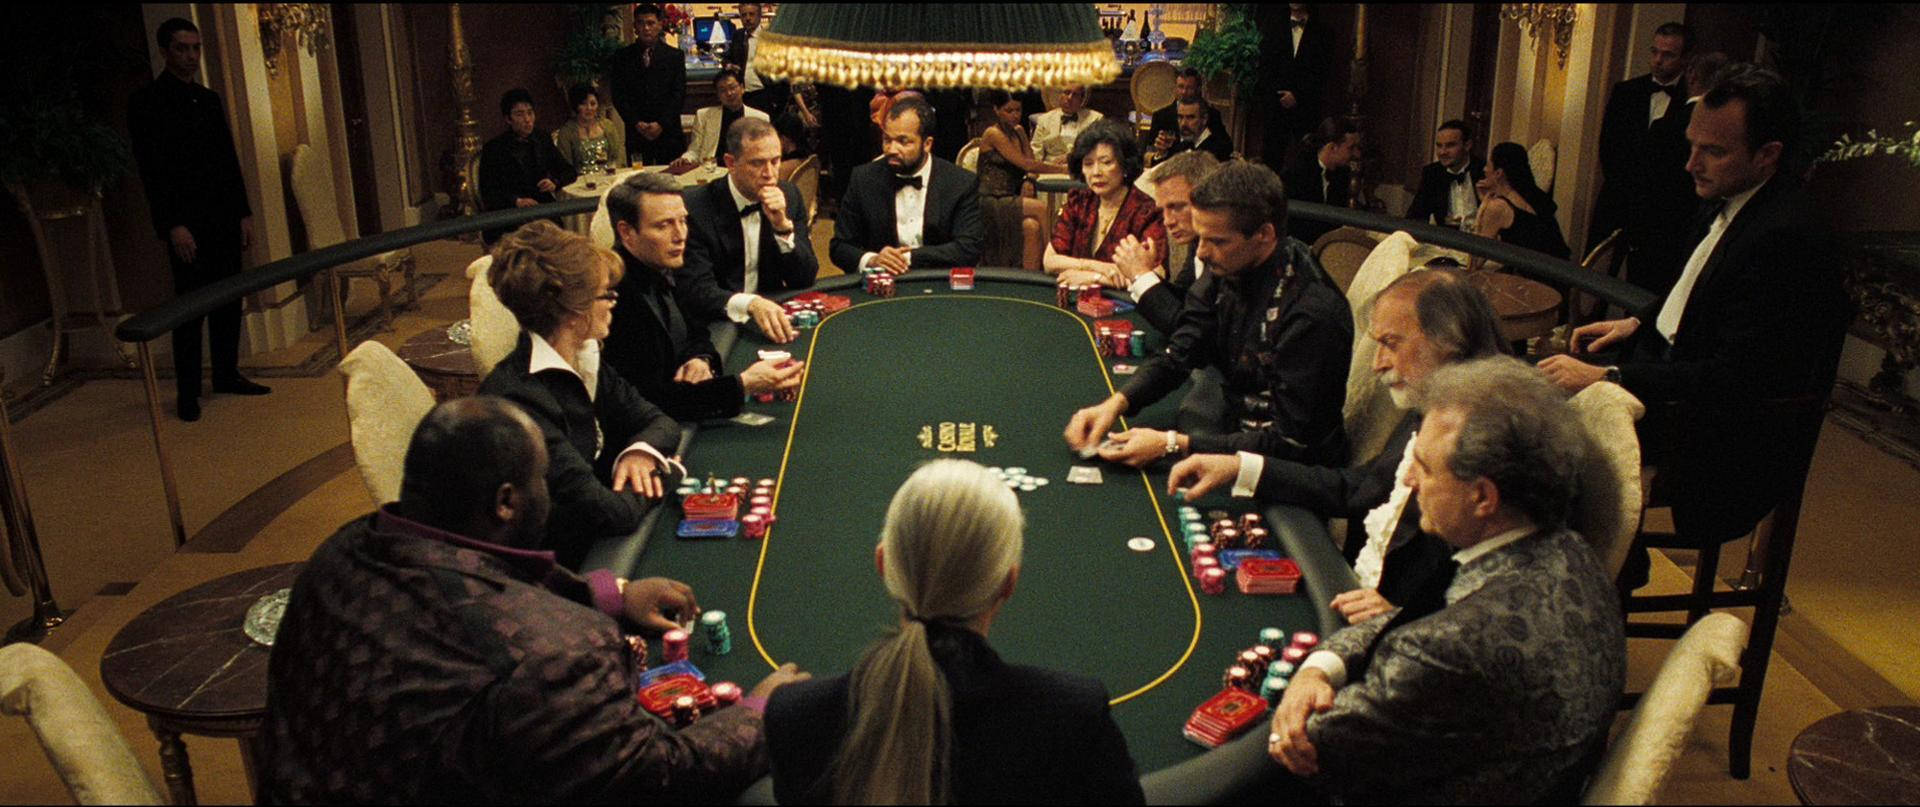 Aristokrater Spiller Ved Pokerbordet Wallpaper